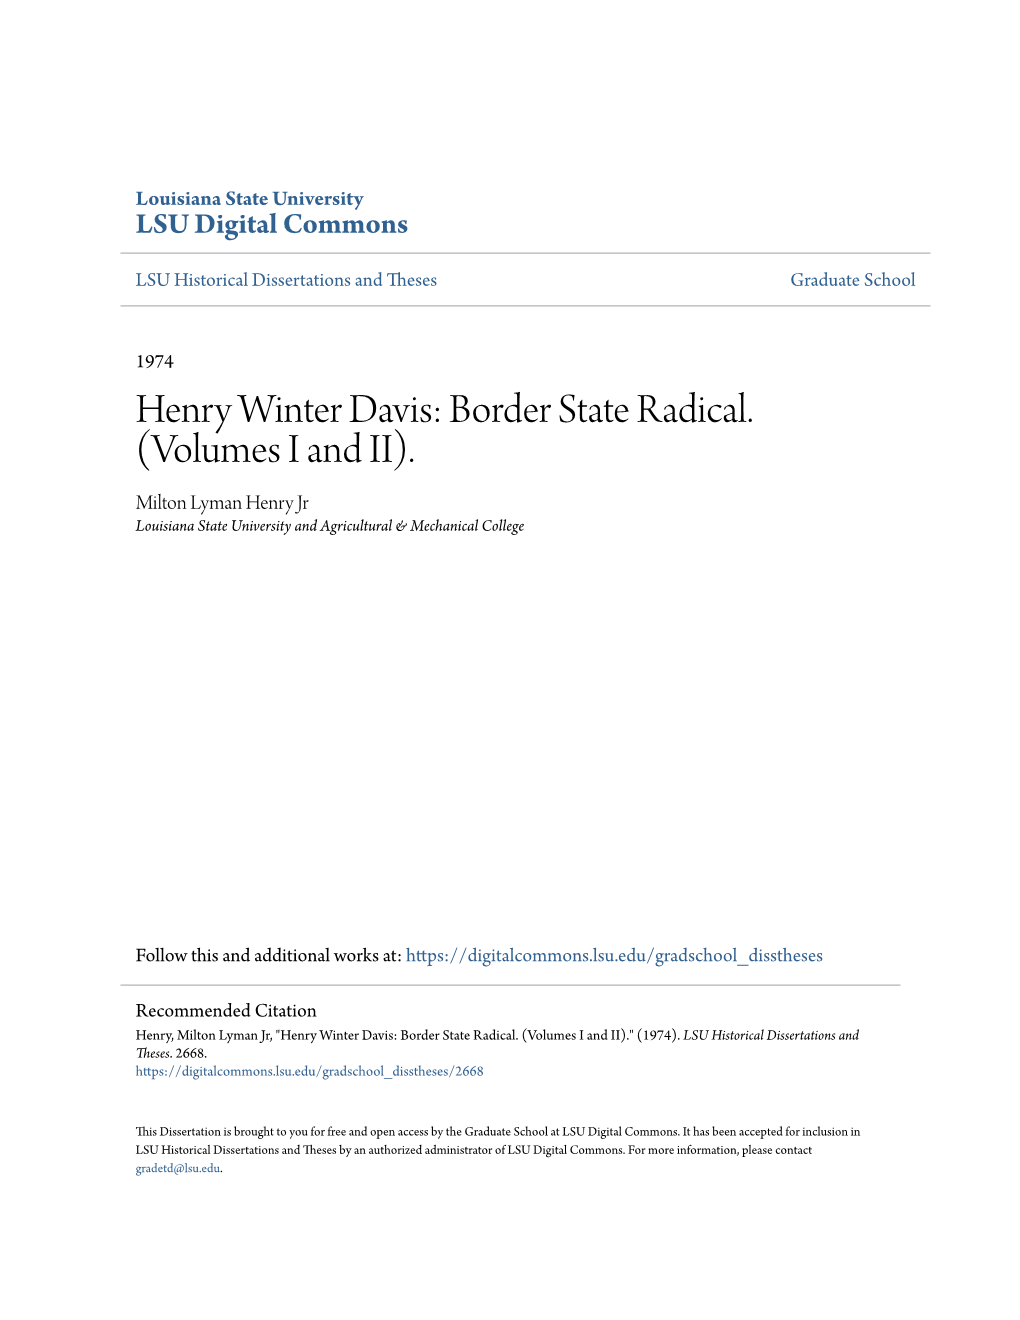 Henry Winter Davis: Border State Radical